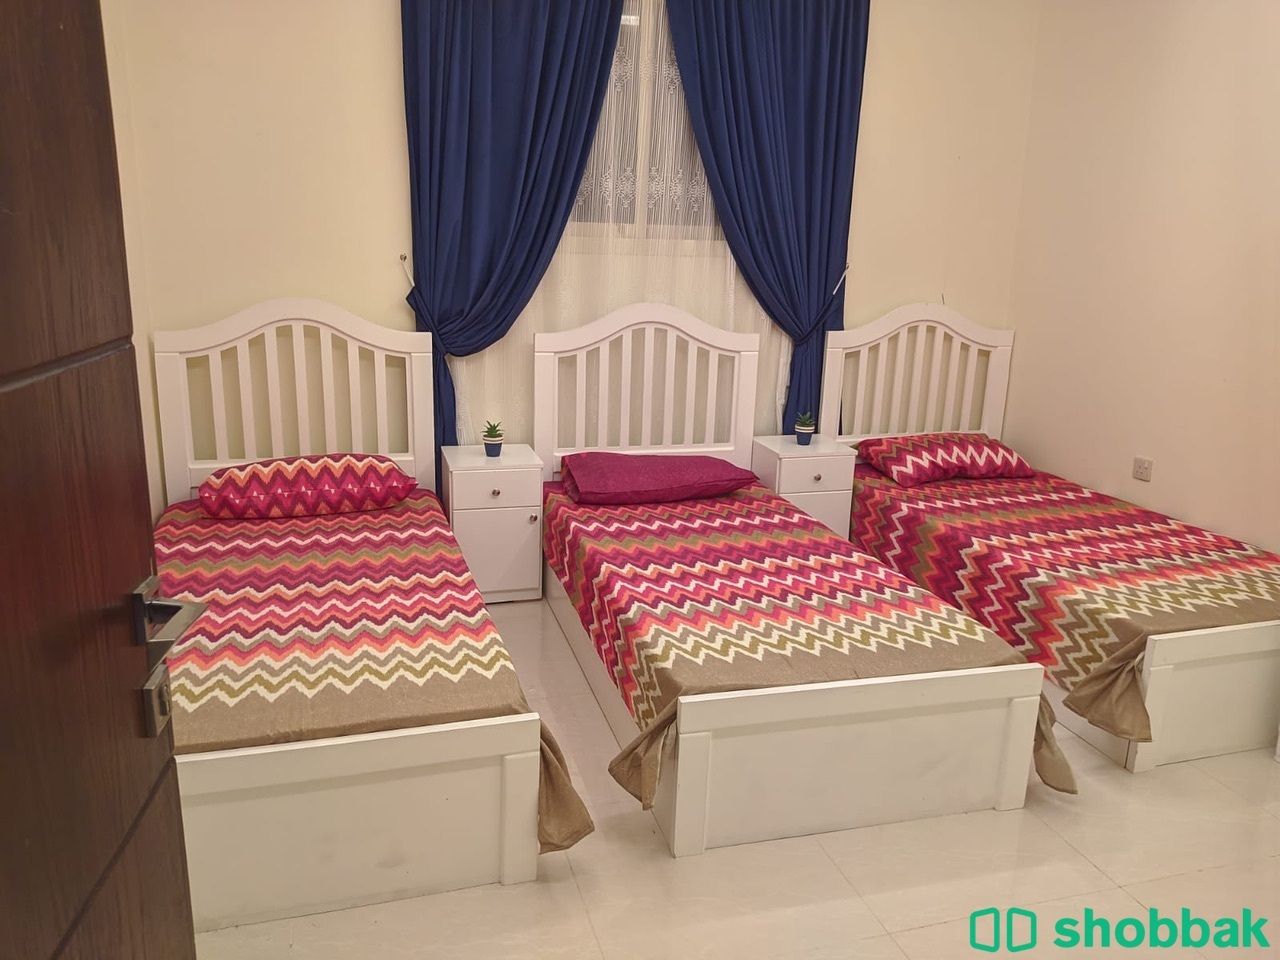 غرفه بيضاء نظيفة جدا للبيع  Shobbak Saudi Arabia